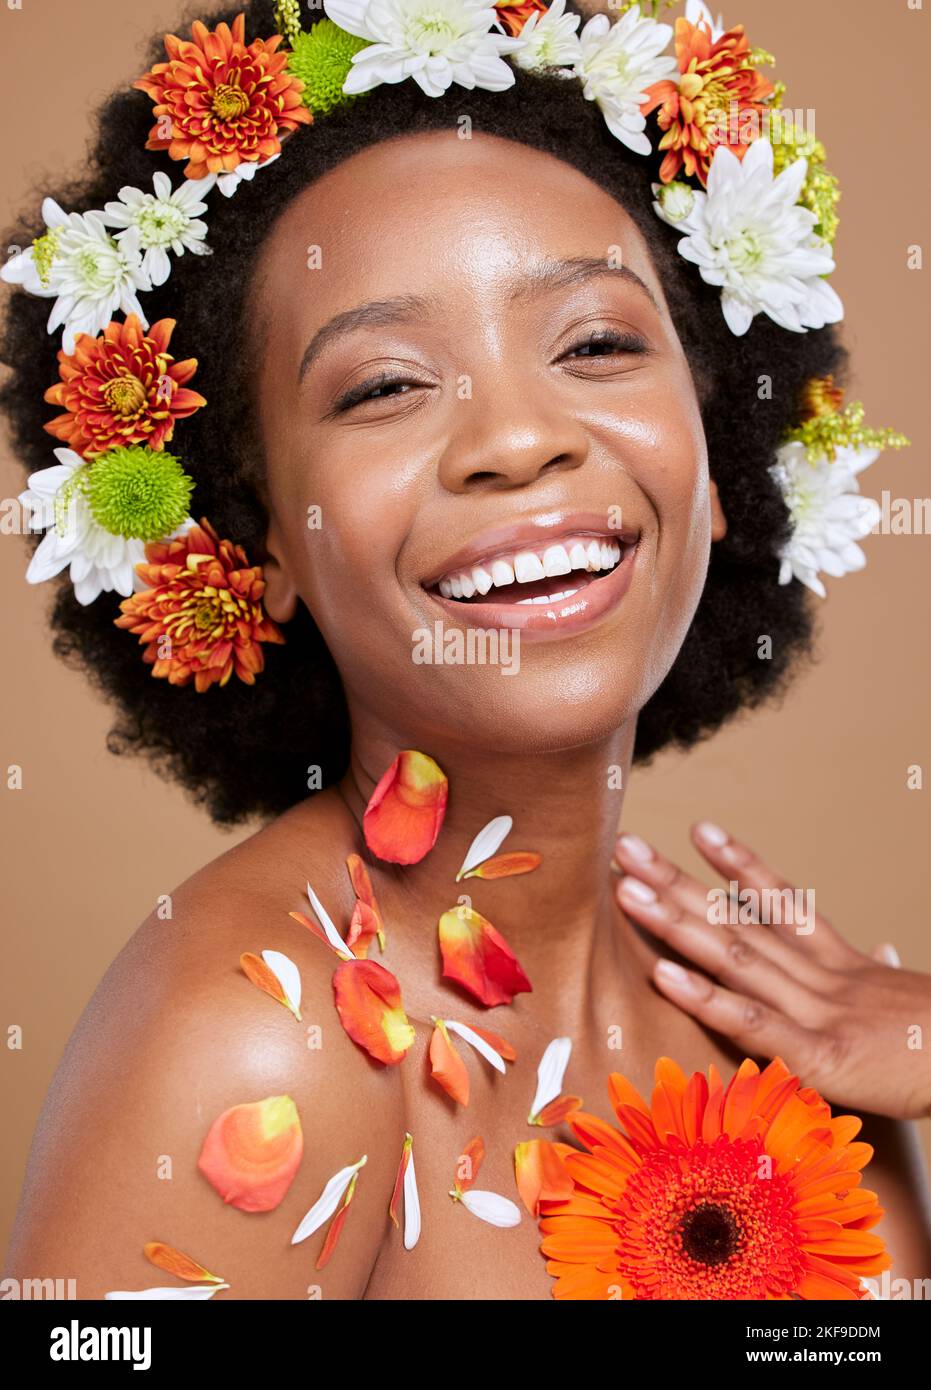 Corona de flores, belleza y retrato de mujer negra con sonrisa sobre fondo marrón en estudio. Cuidado del cabello, cosméticos y chica feliz modelo para natural Foto de stock